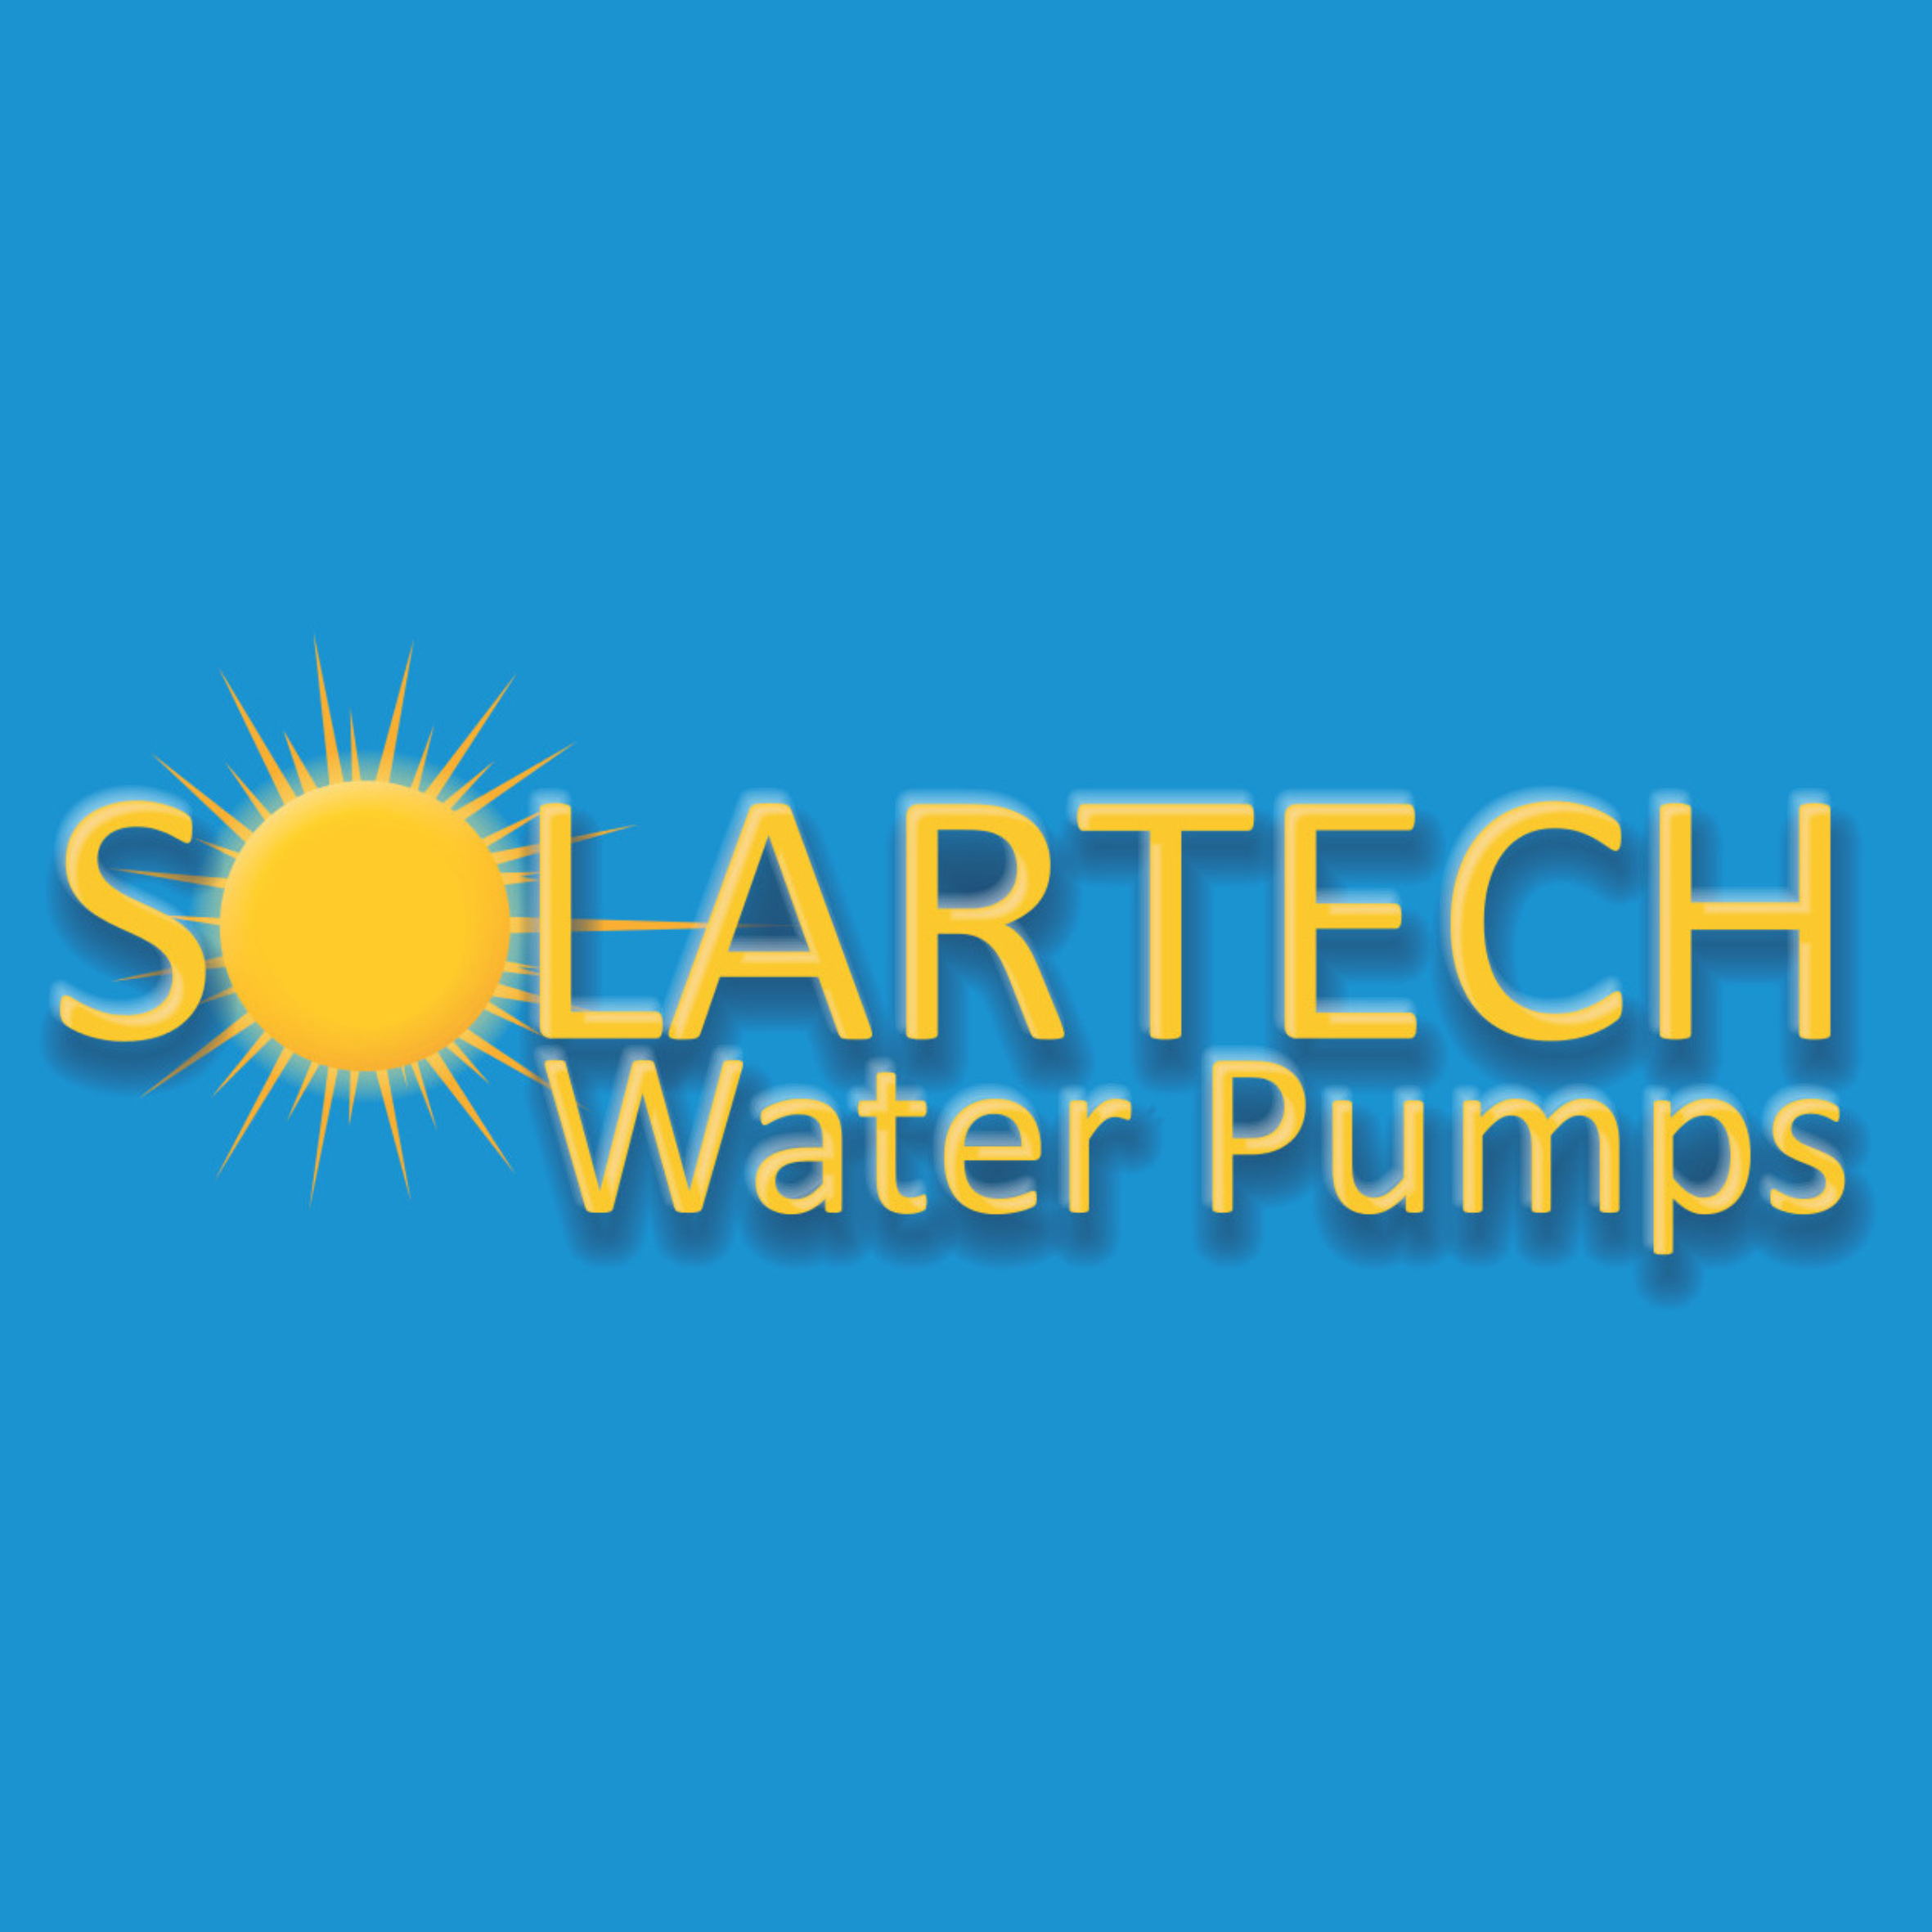 SolarTech logo